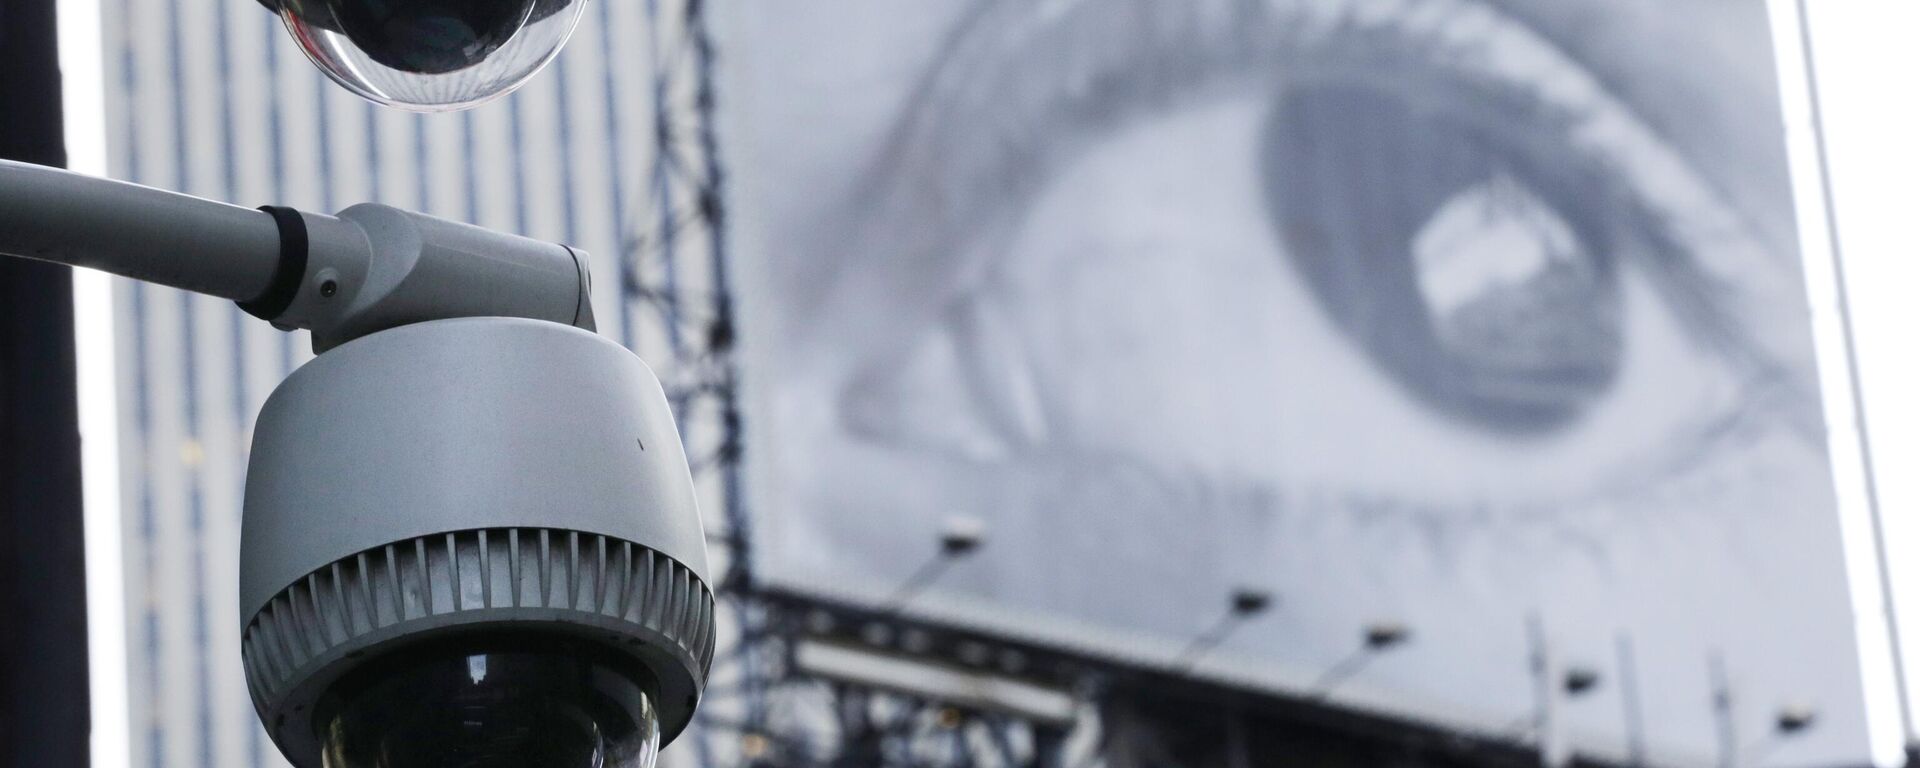 دوربین های مداربسته در کنار یک ساختمان مشرف به یک تقاطع در مرکز شهر منهتن، چهارشنبه، 31 ژوئیه 2013، در نیویورک نصب شده است.  در پس زمینه بیلبوردی است که چشم انسان را به تصویر می کشد - Sputnik International 1920 04/18/2024